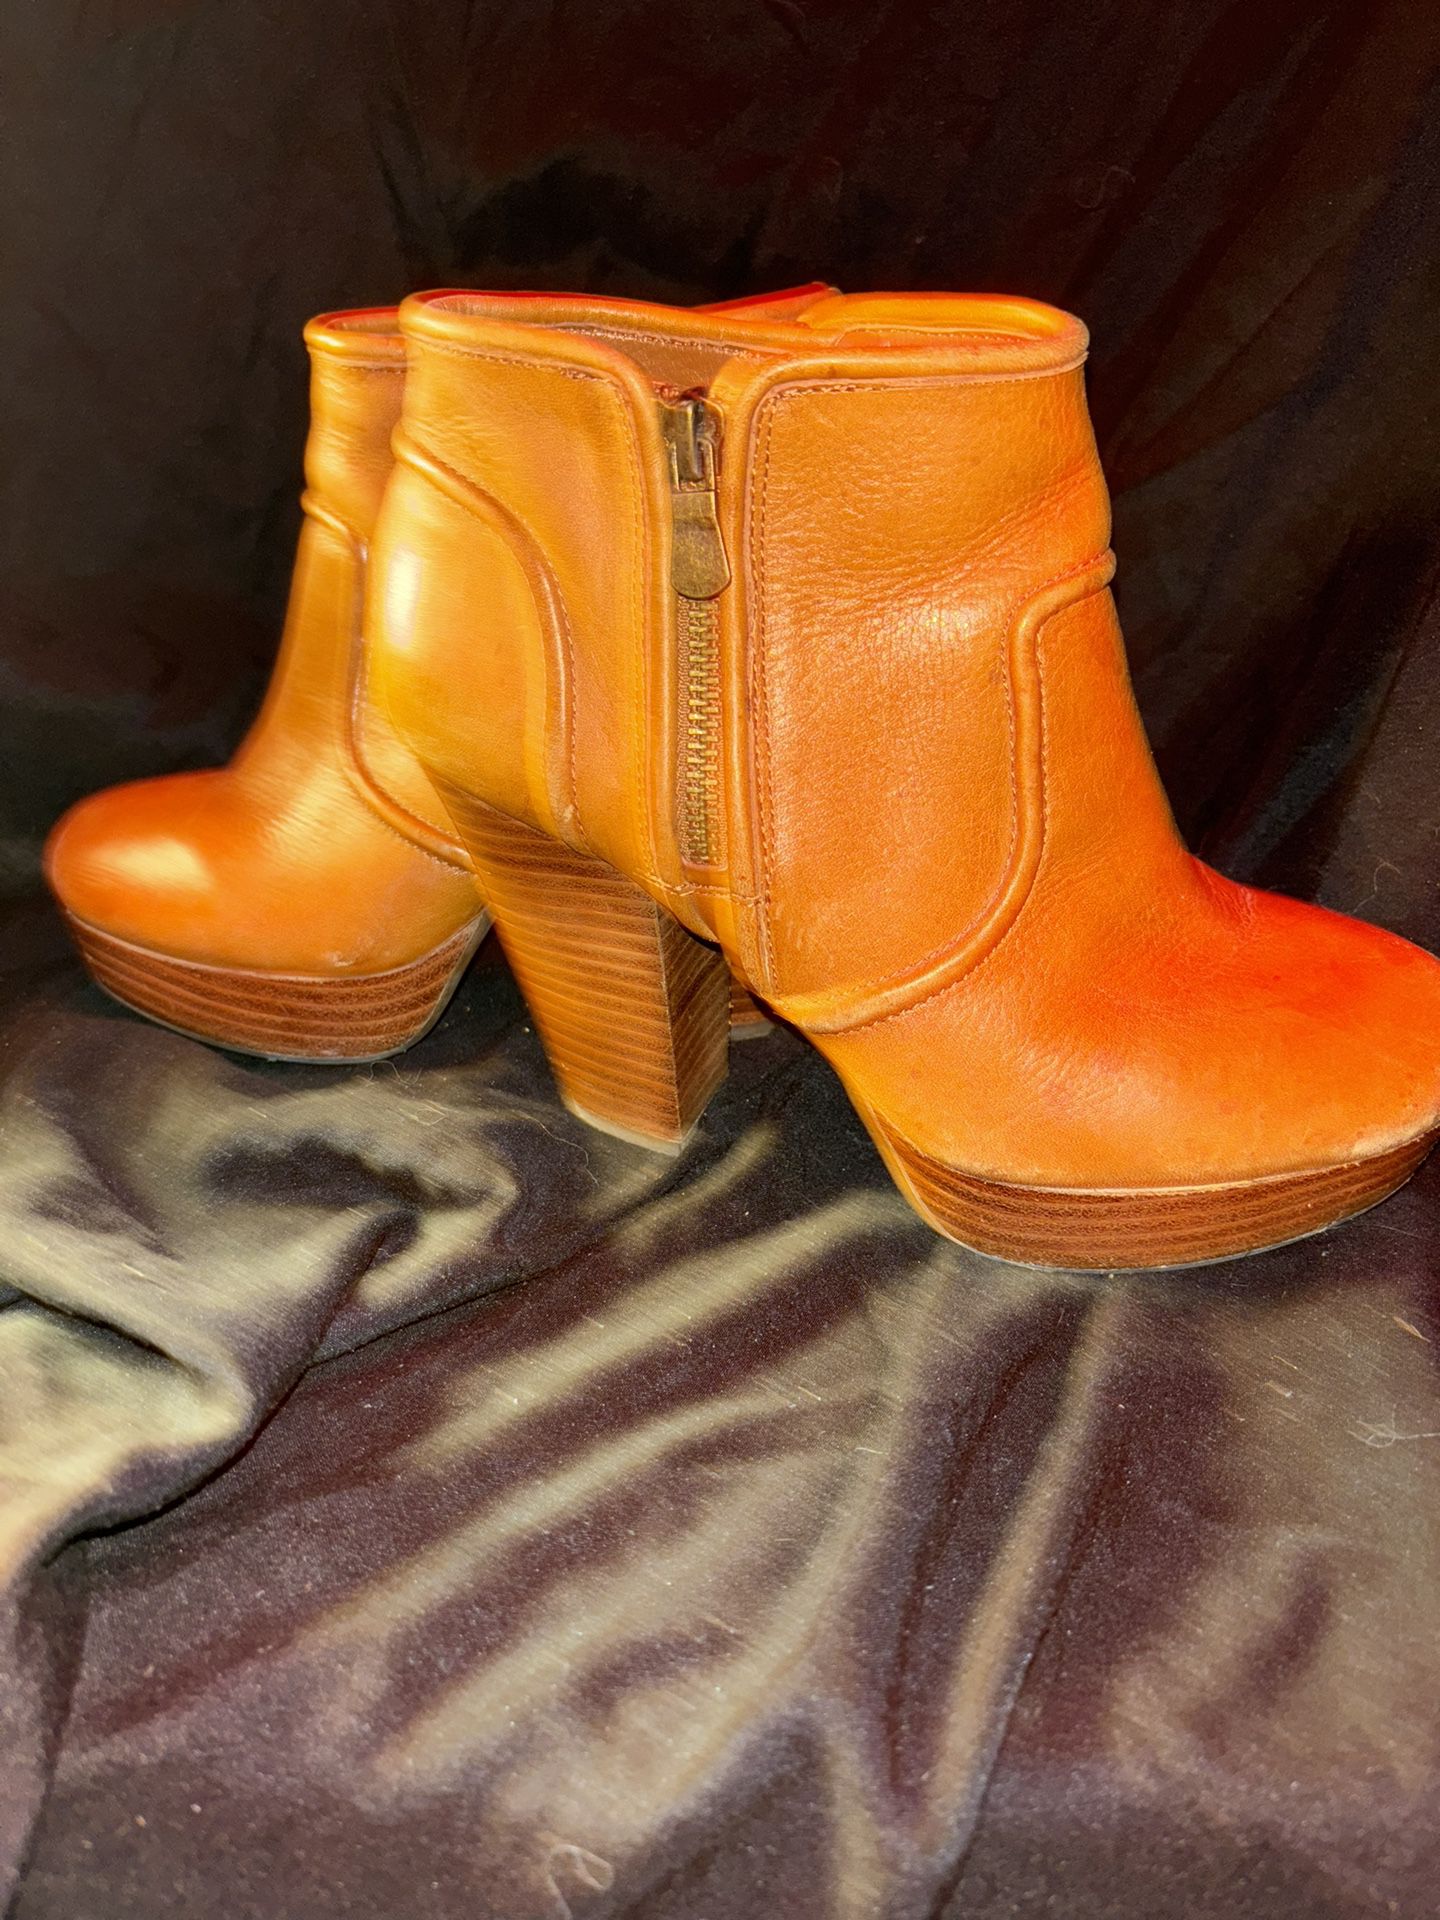 Gianni Bini Wedge Heel Boots Leather Woman’s 6